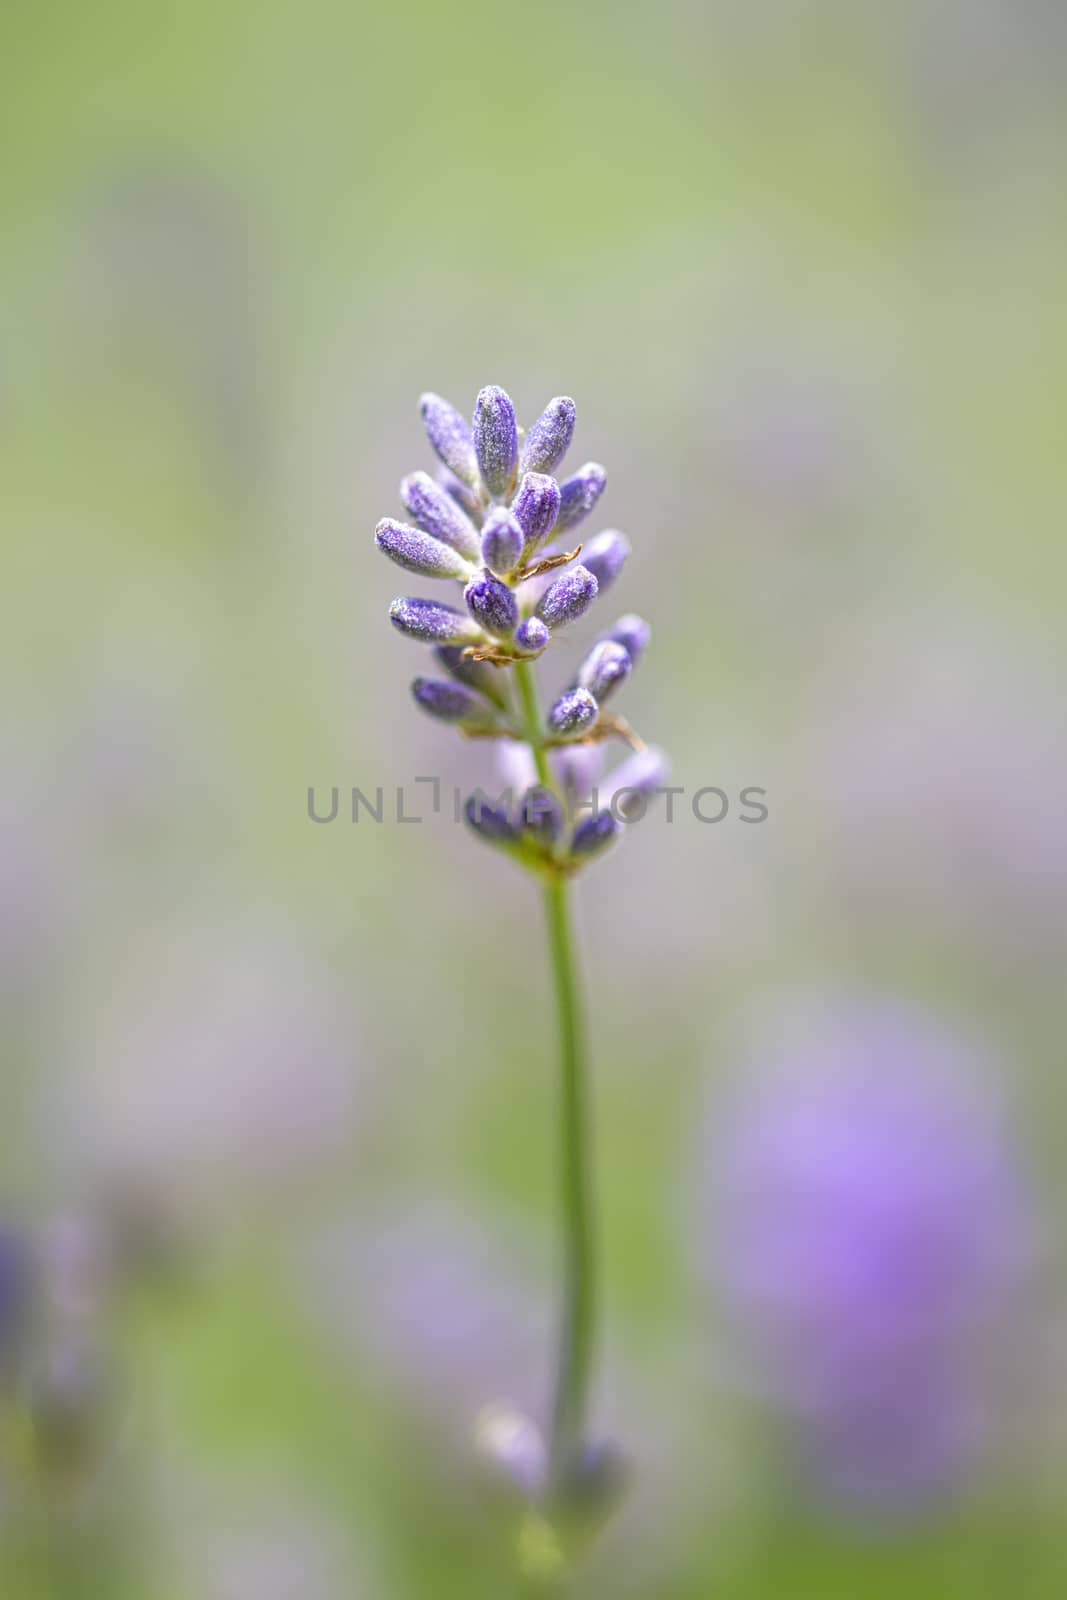 Lavender flower or blossom against a blur leaf and lavender background